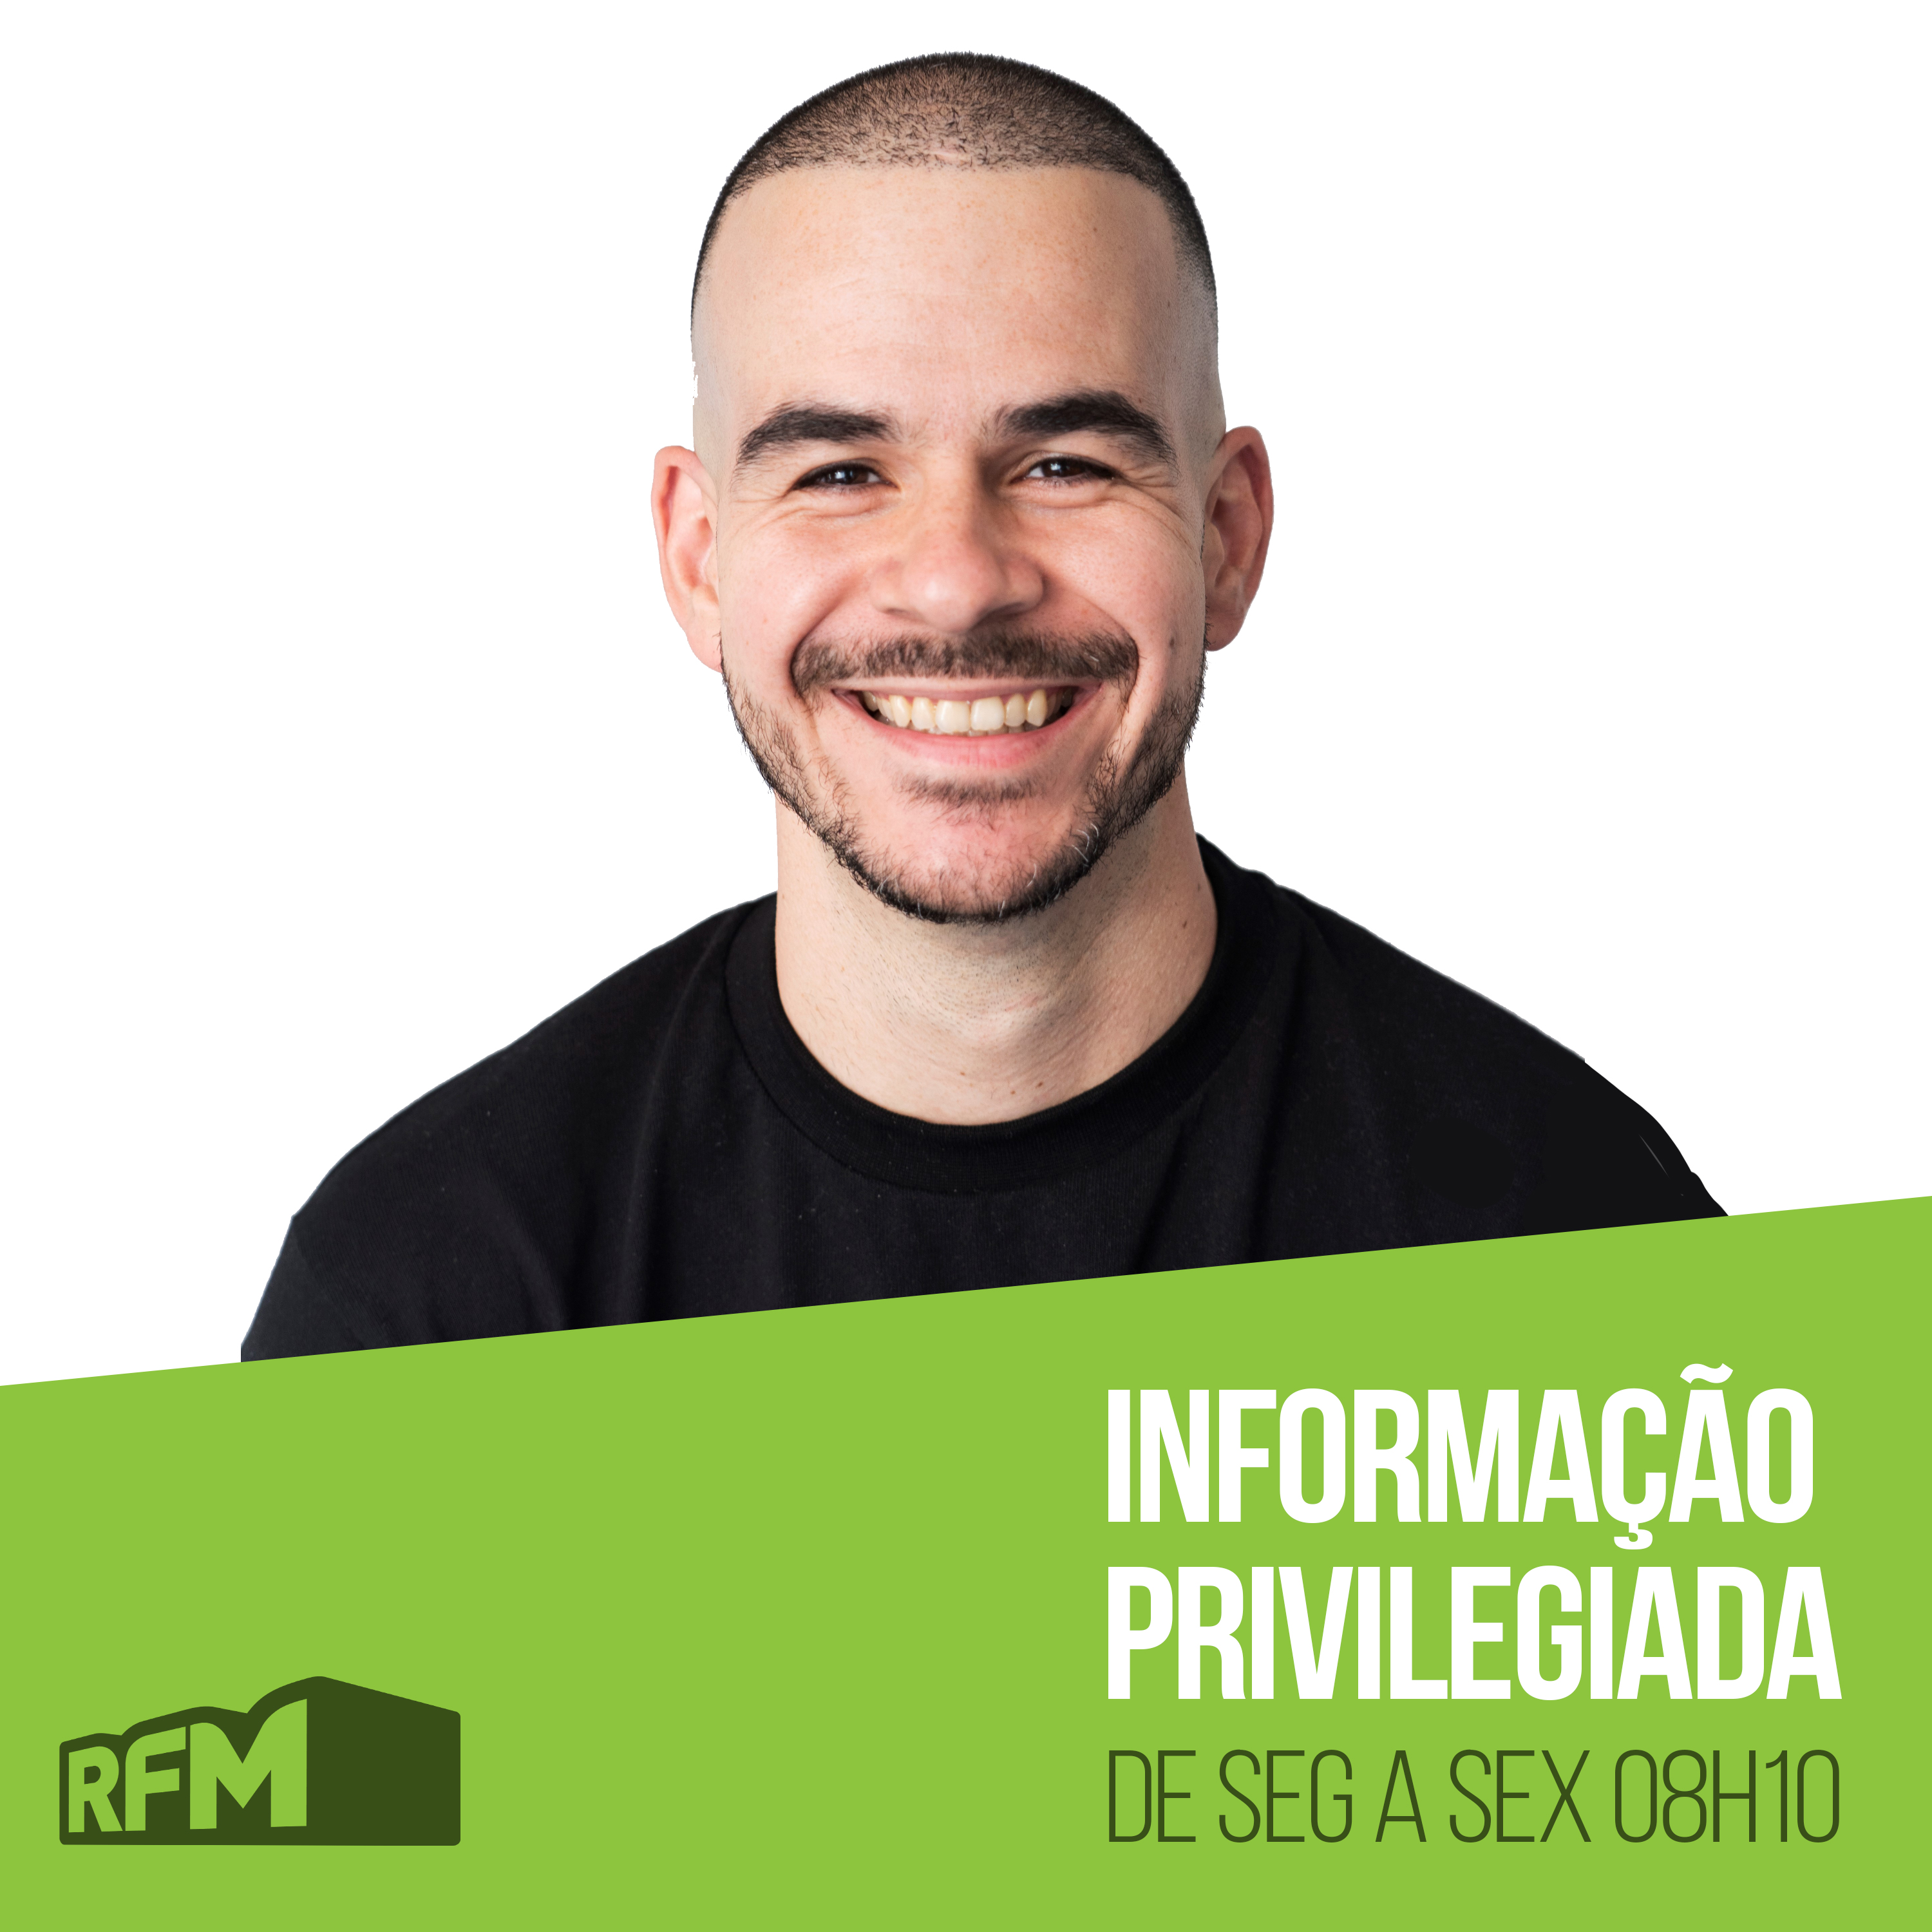 RFM - Informação Privilegiada: UM APRECIADOR DE MULHERES AVANTAJADAS